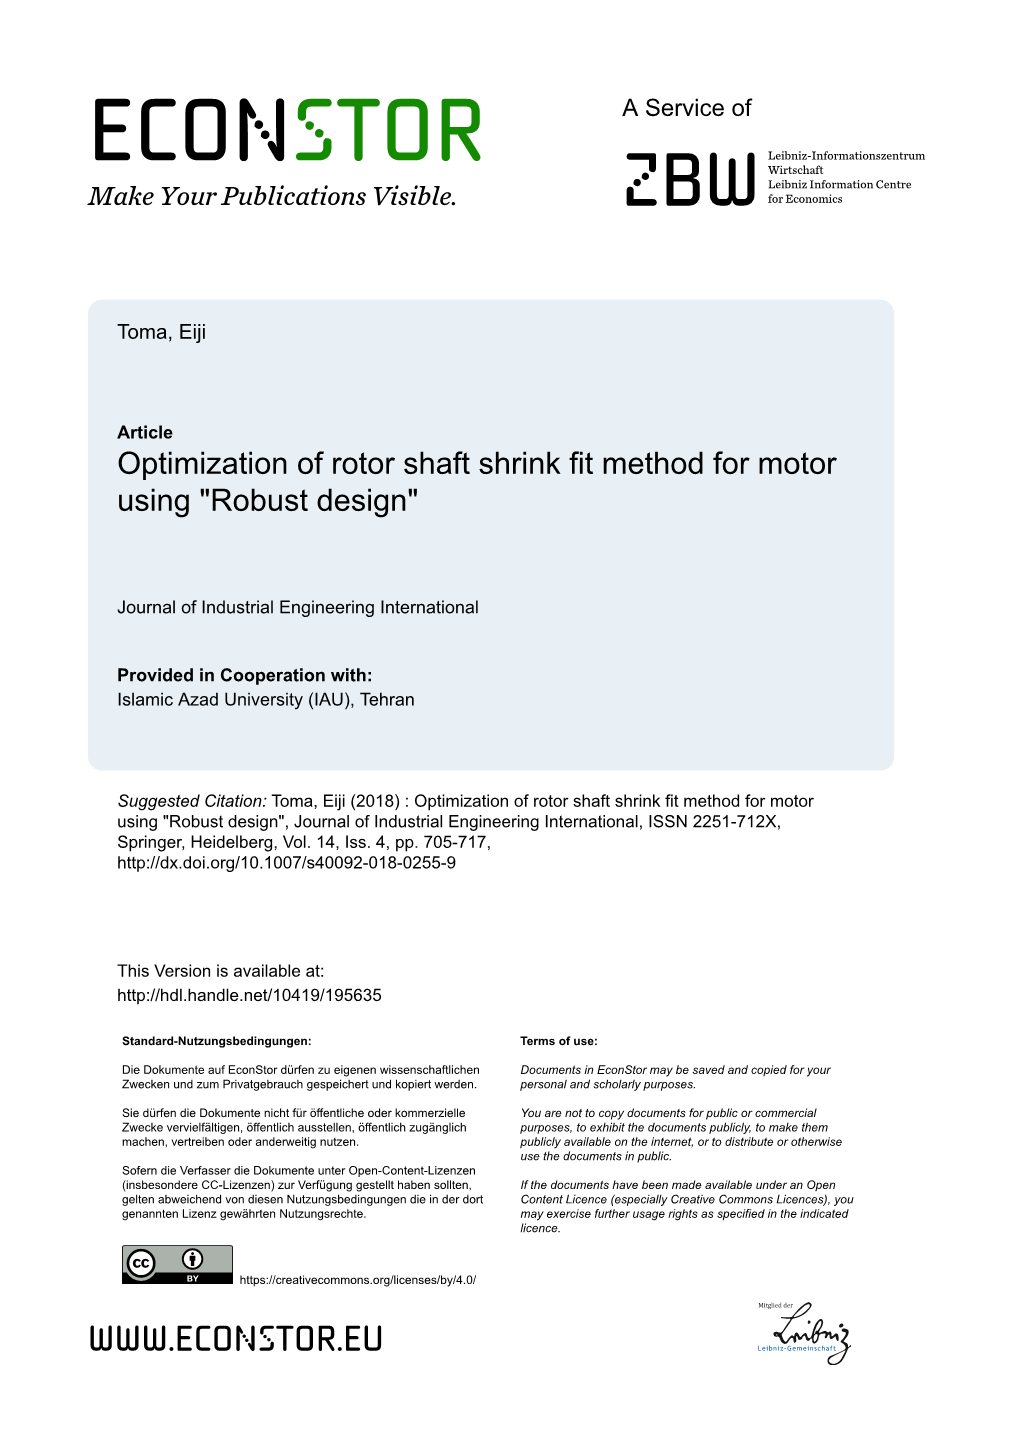 Optimization of Rotor Shaft Shrink Fit Method for Motor Using “Robust Design”